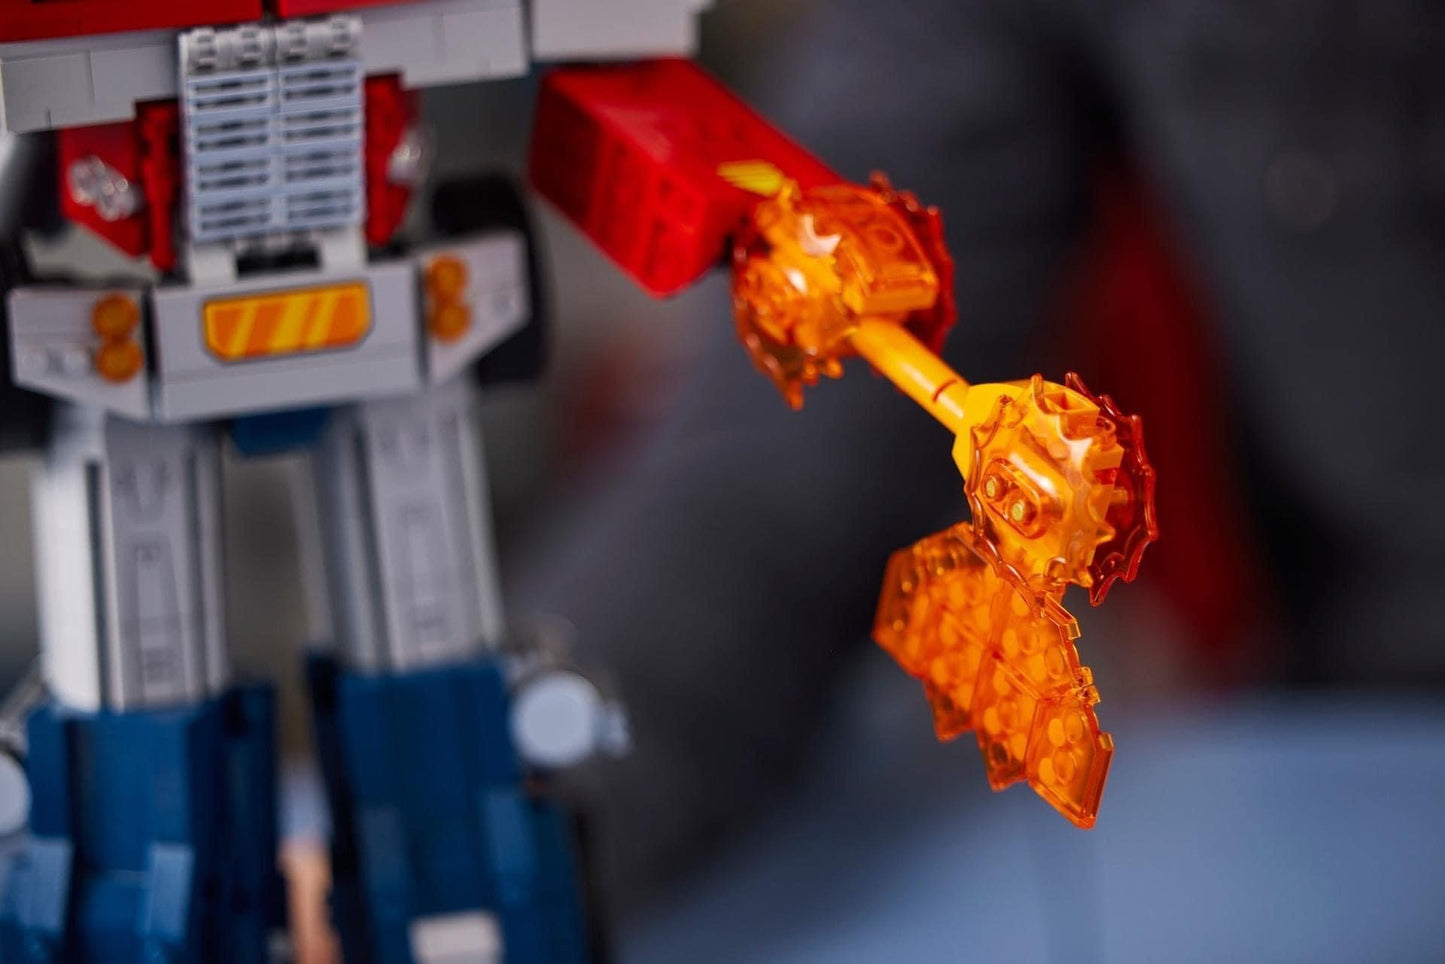 10302 LEGO Creator - Optimus Prime